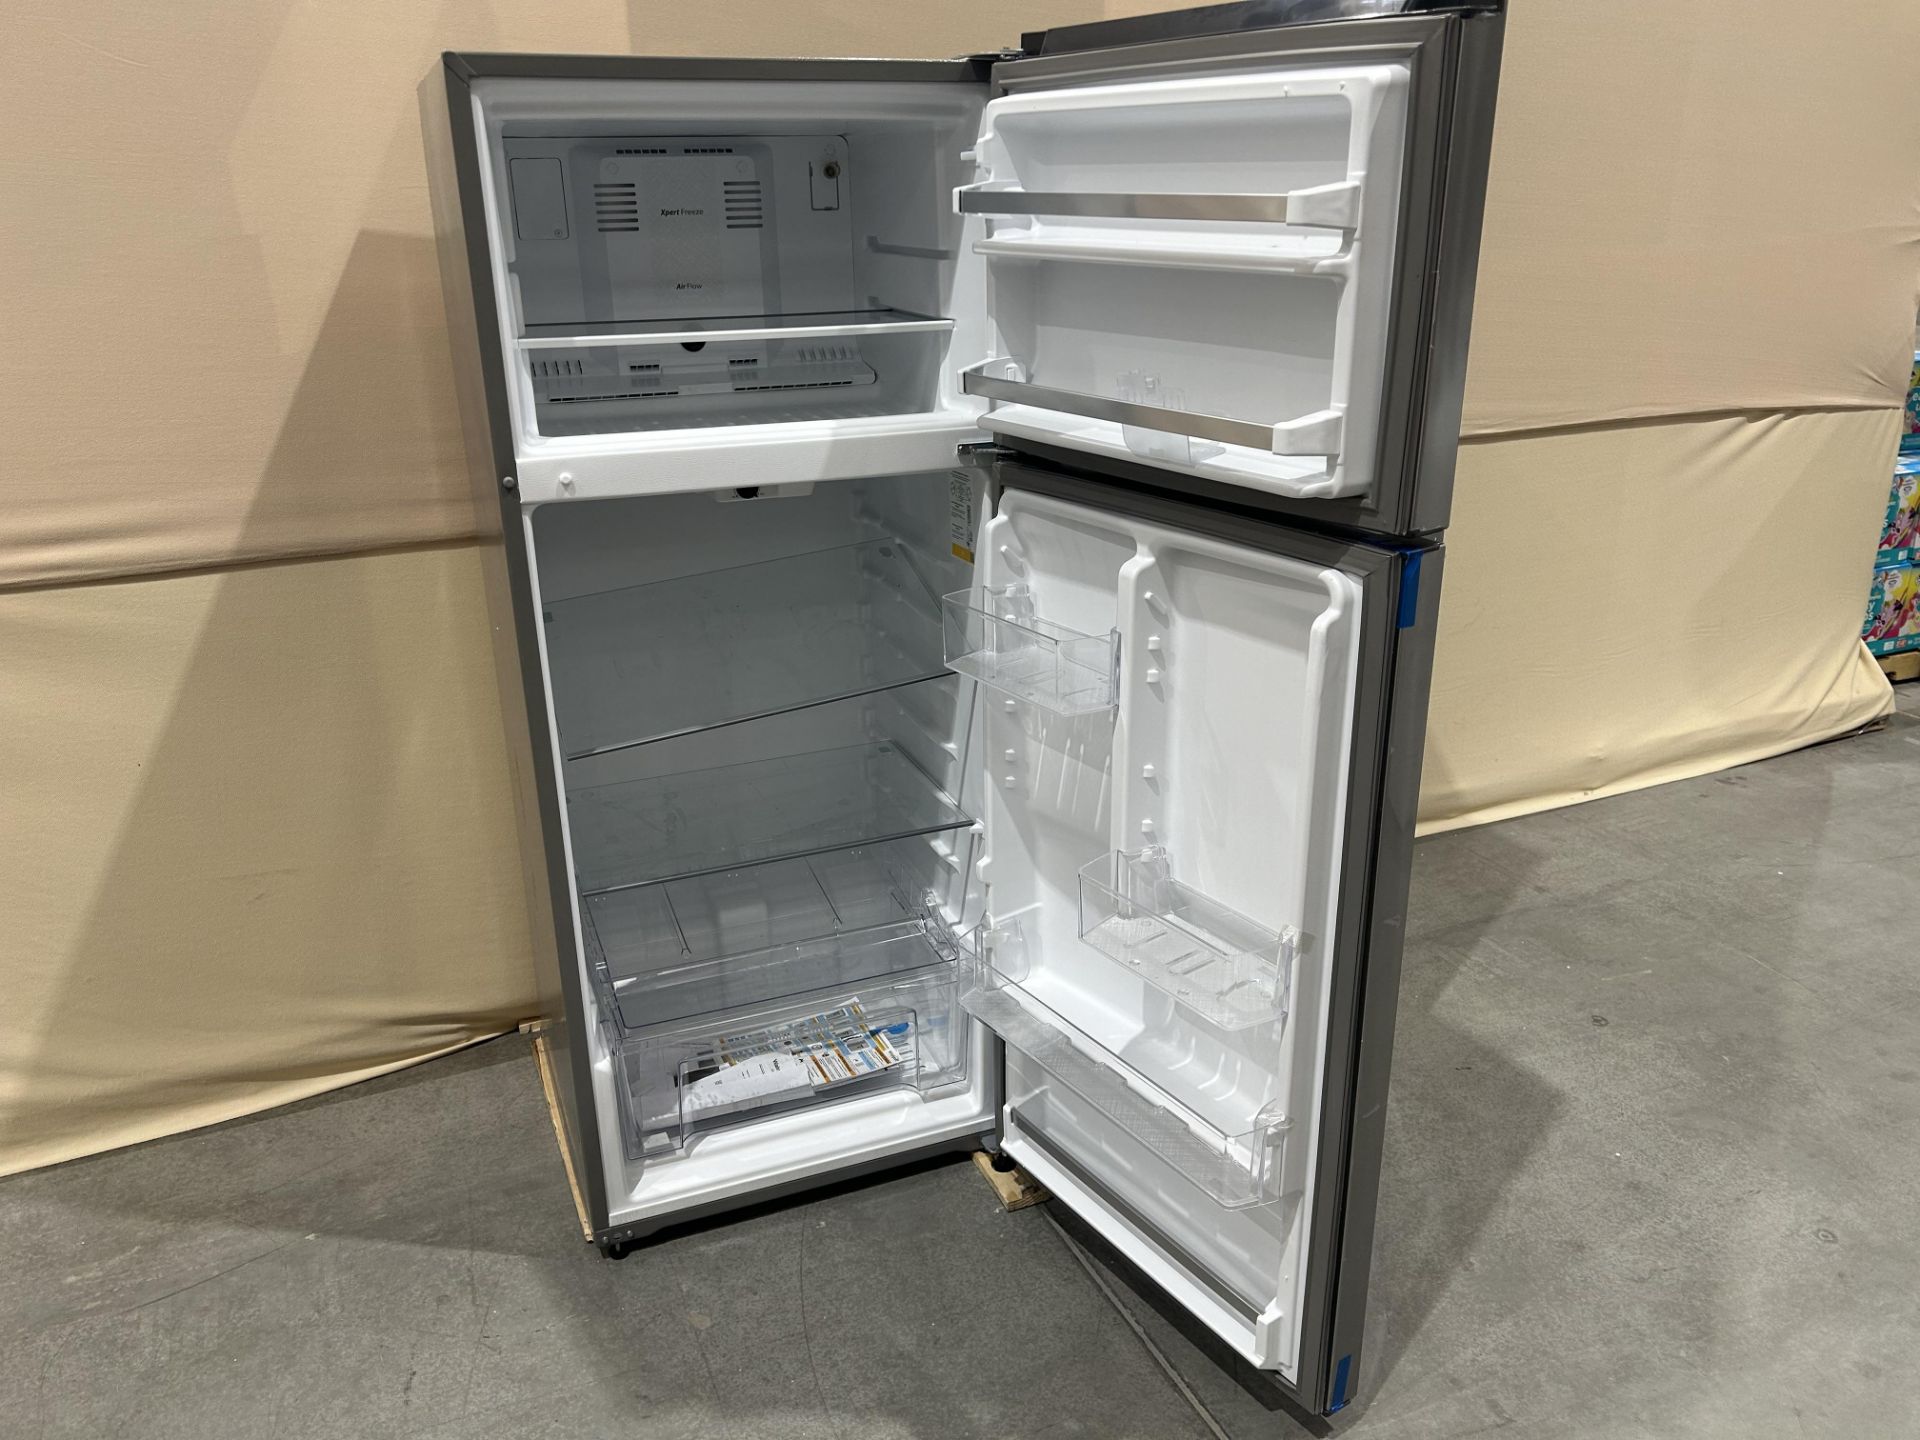 Lote de 2 refrigeradores contiene: 1 refrigerador Marca WHIRLPOOL, Modelo WT1818A, Serie 535500, Co - Image 4 of 6